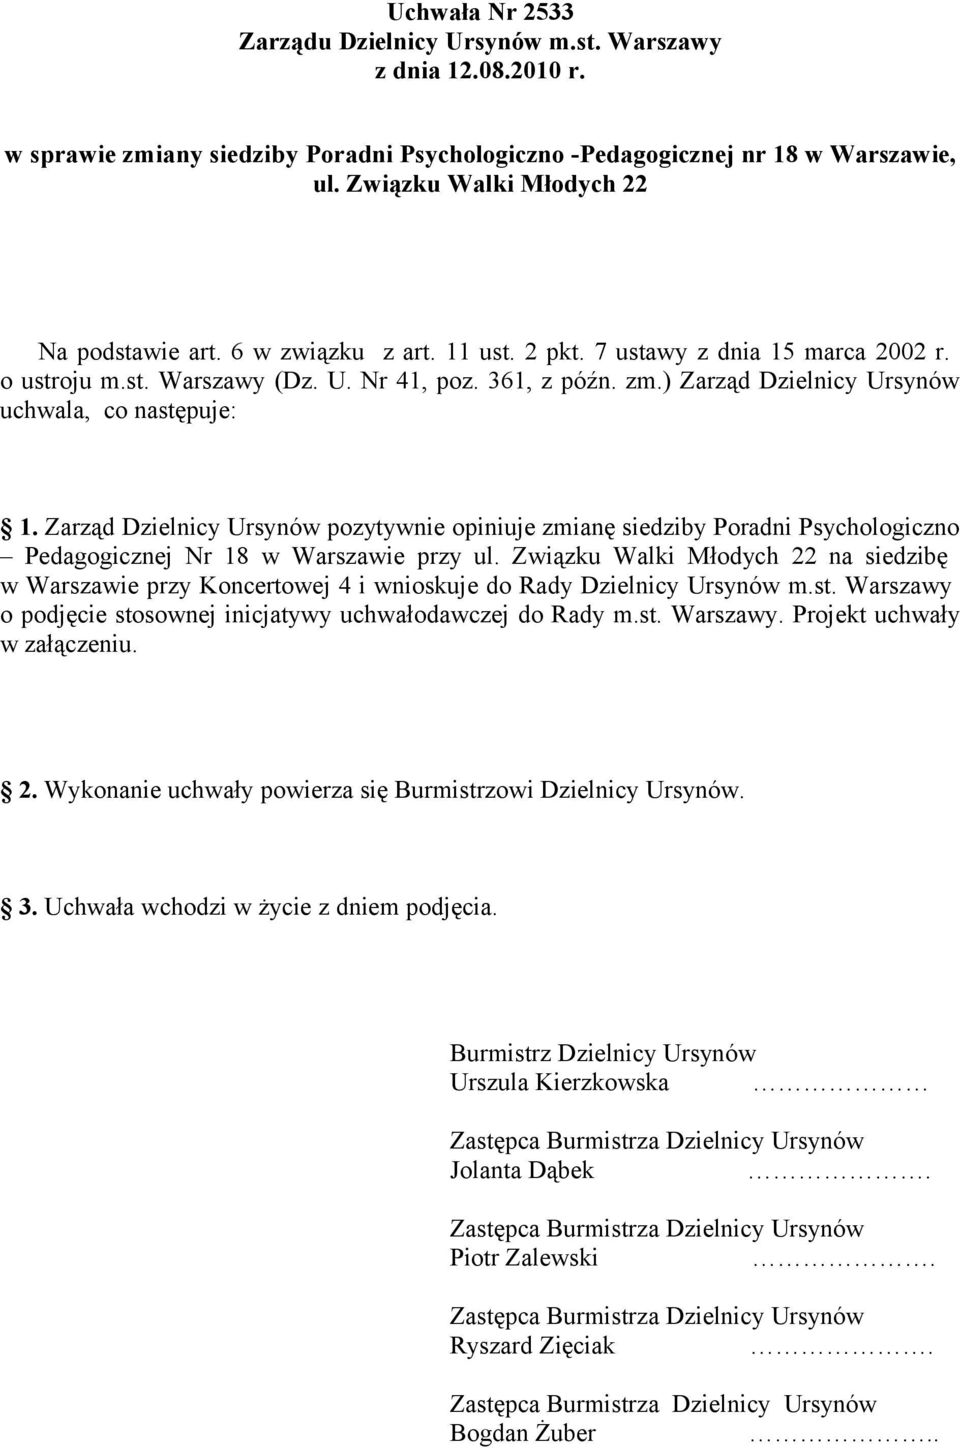 Zarząd Dzielnicy Ursynów pozytywnie opiniuje zmianę siedziby Poradni Psychologiczno Pedagogicznej Nr 18 w Warszawie przy na siedzibę w Warszawie przy Koncertowej 4 i wnioskuje do Rady Dzielnicy